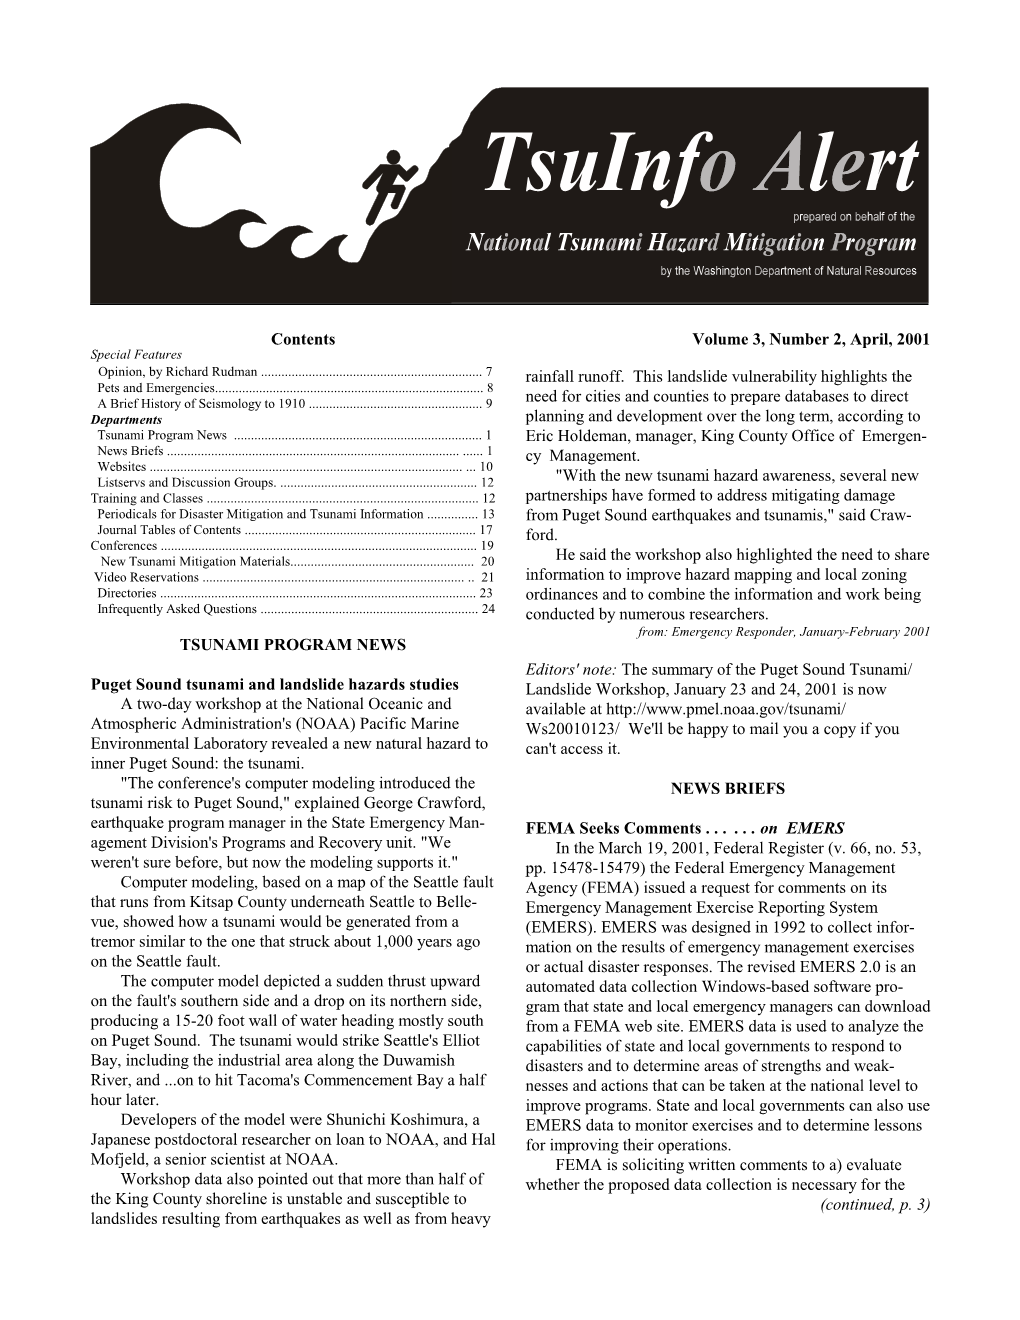 Tsuinfo Alert, April 2001